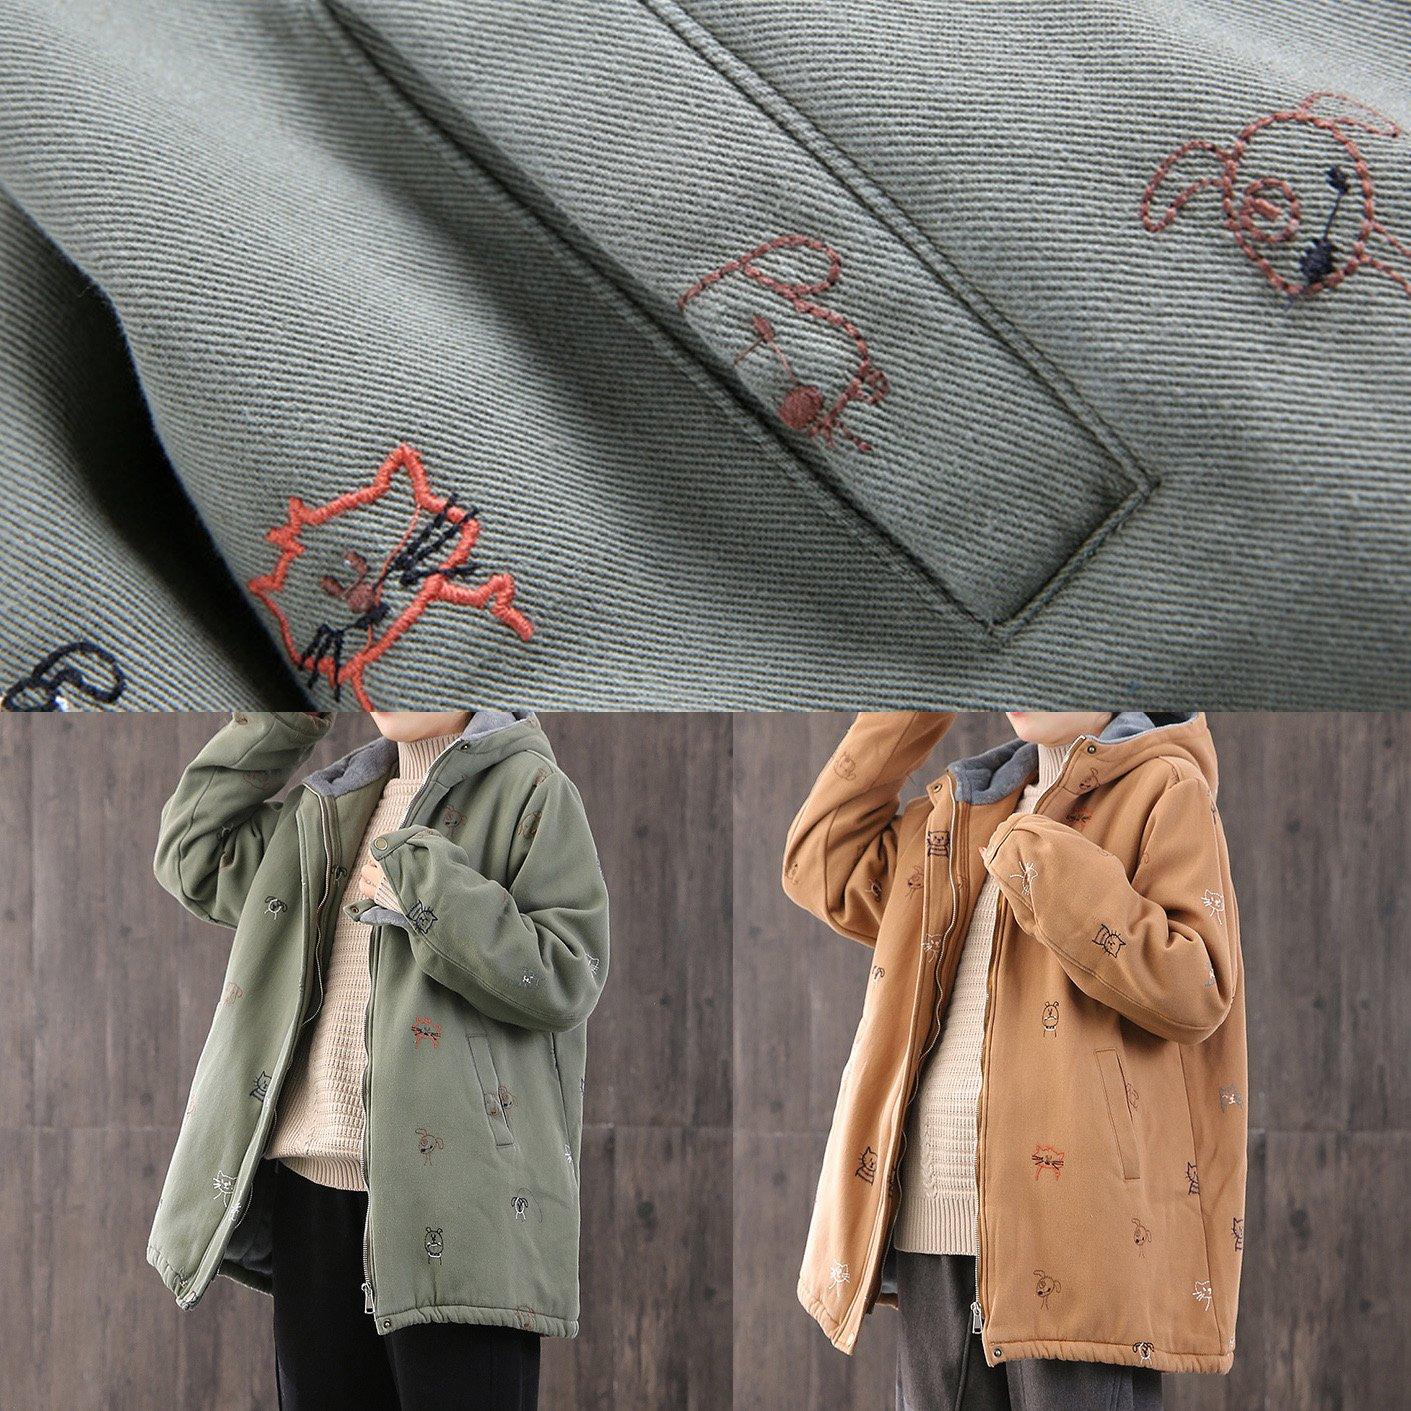 Luxury oversize Coats winter coats khaki embroidery hooded drawstring women parka - Omychic